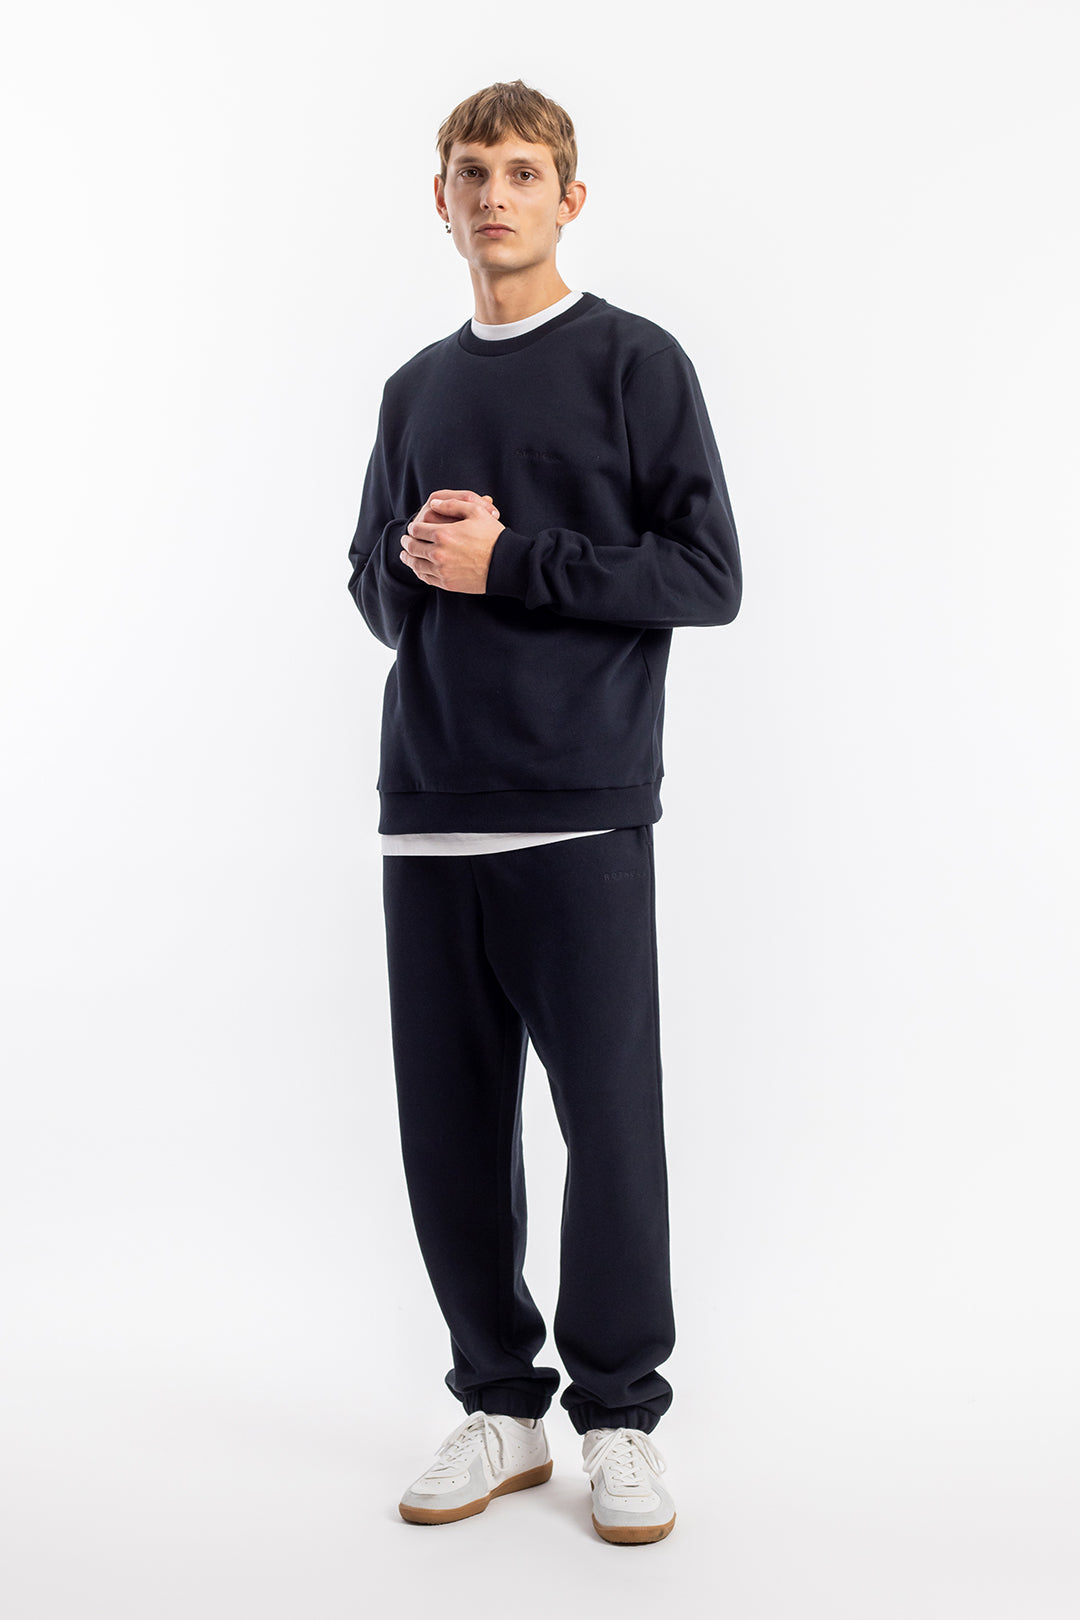 Pantalon de jogging noir à logo en coton biologique par Rotholz